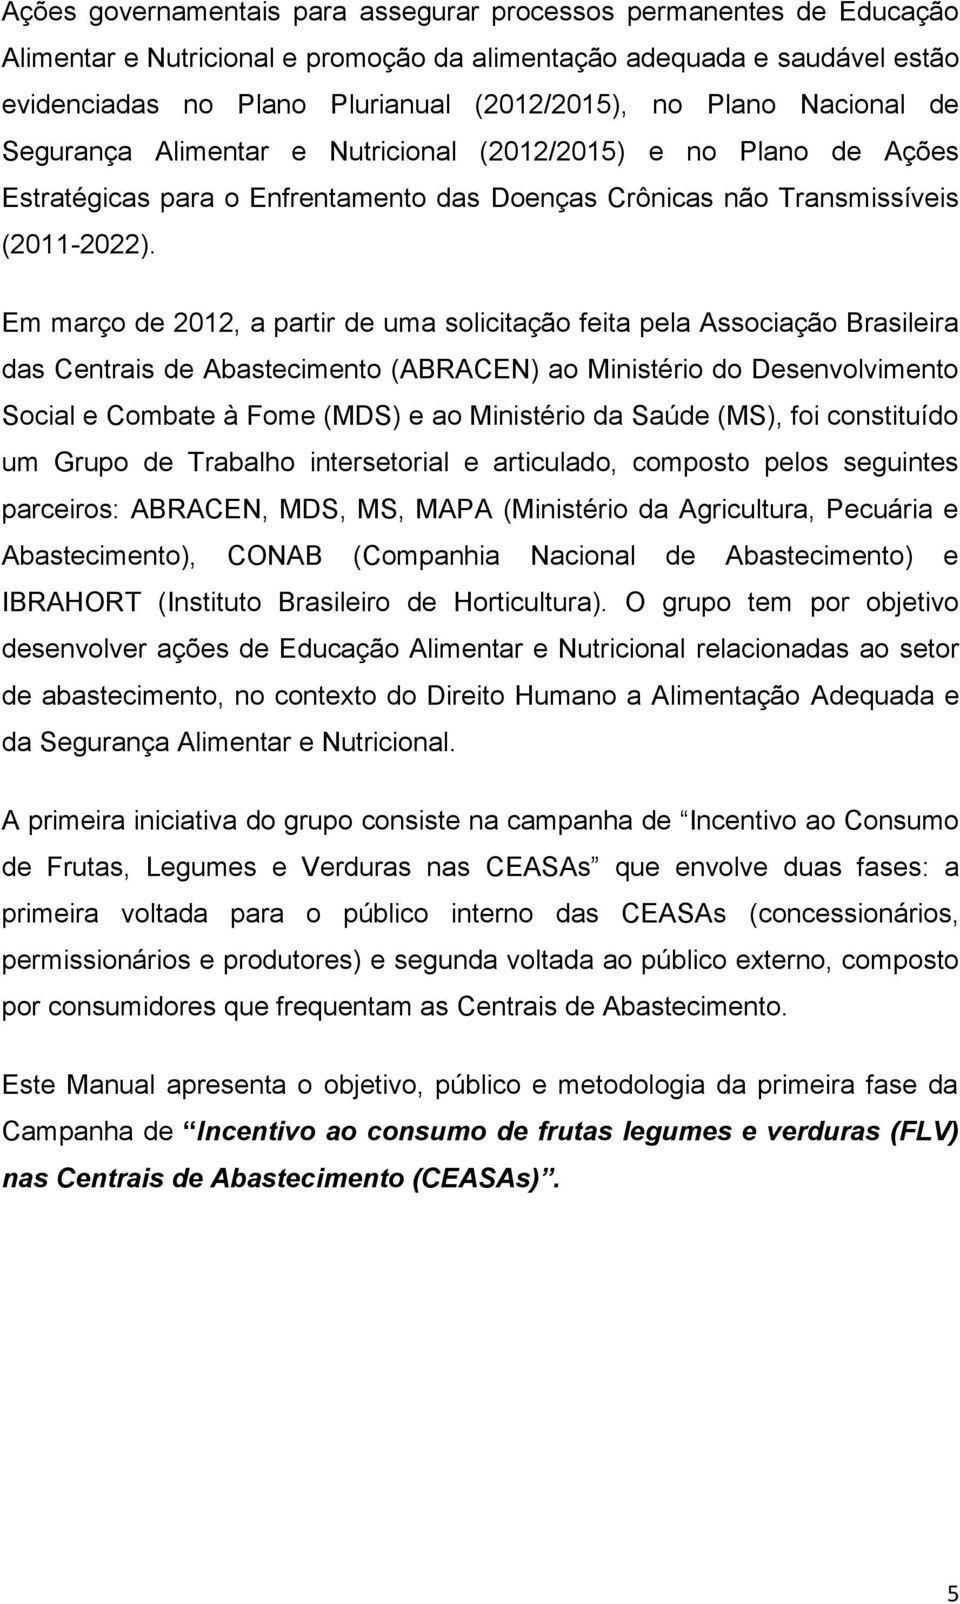 Em março de 2012, a partir de uma solicitação feita pela Associação Brasileira das Centrais de Abastecimento (ABRACEN) ao Ministério do Desenvolvimento Social e Combate à Fome (MDS) e ao Ministério